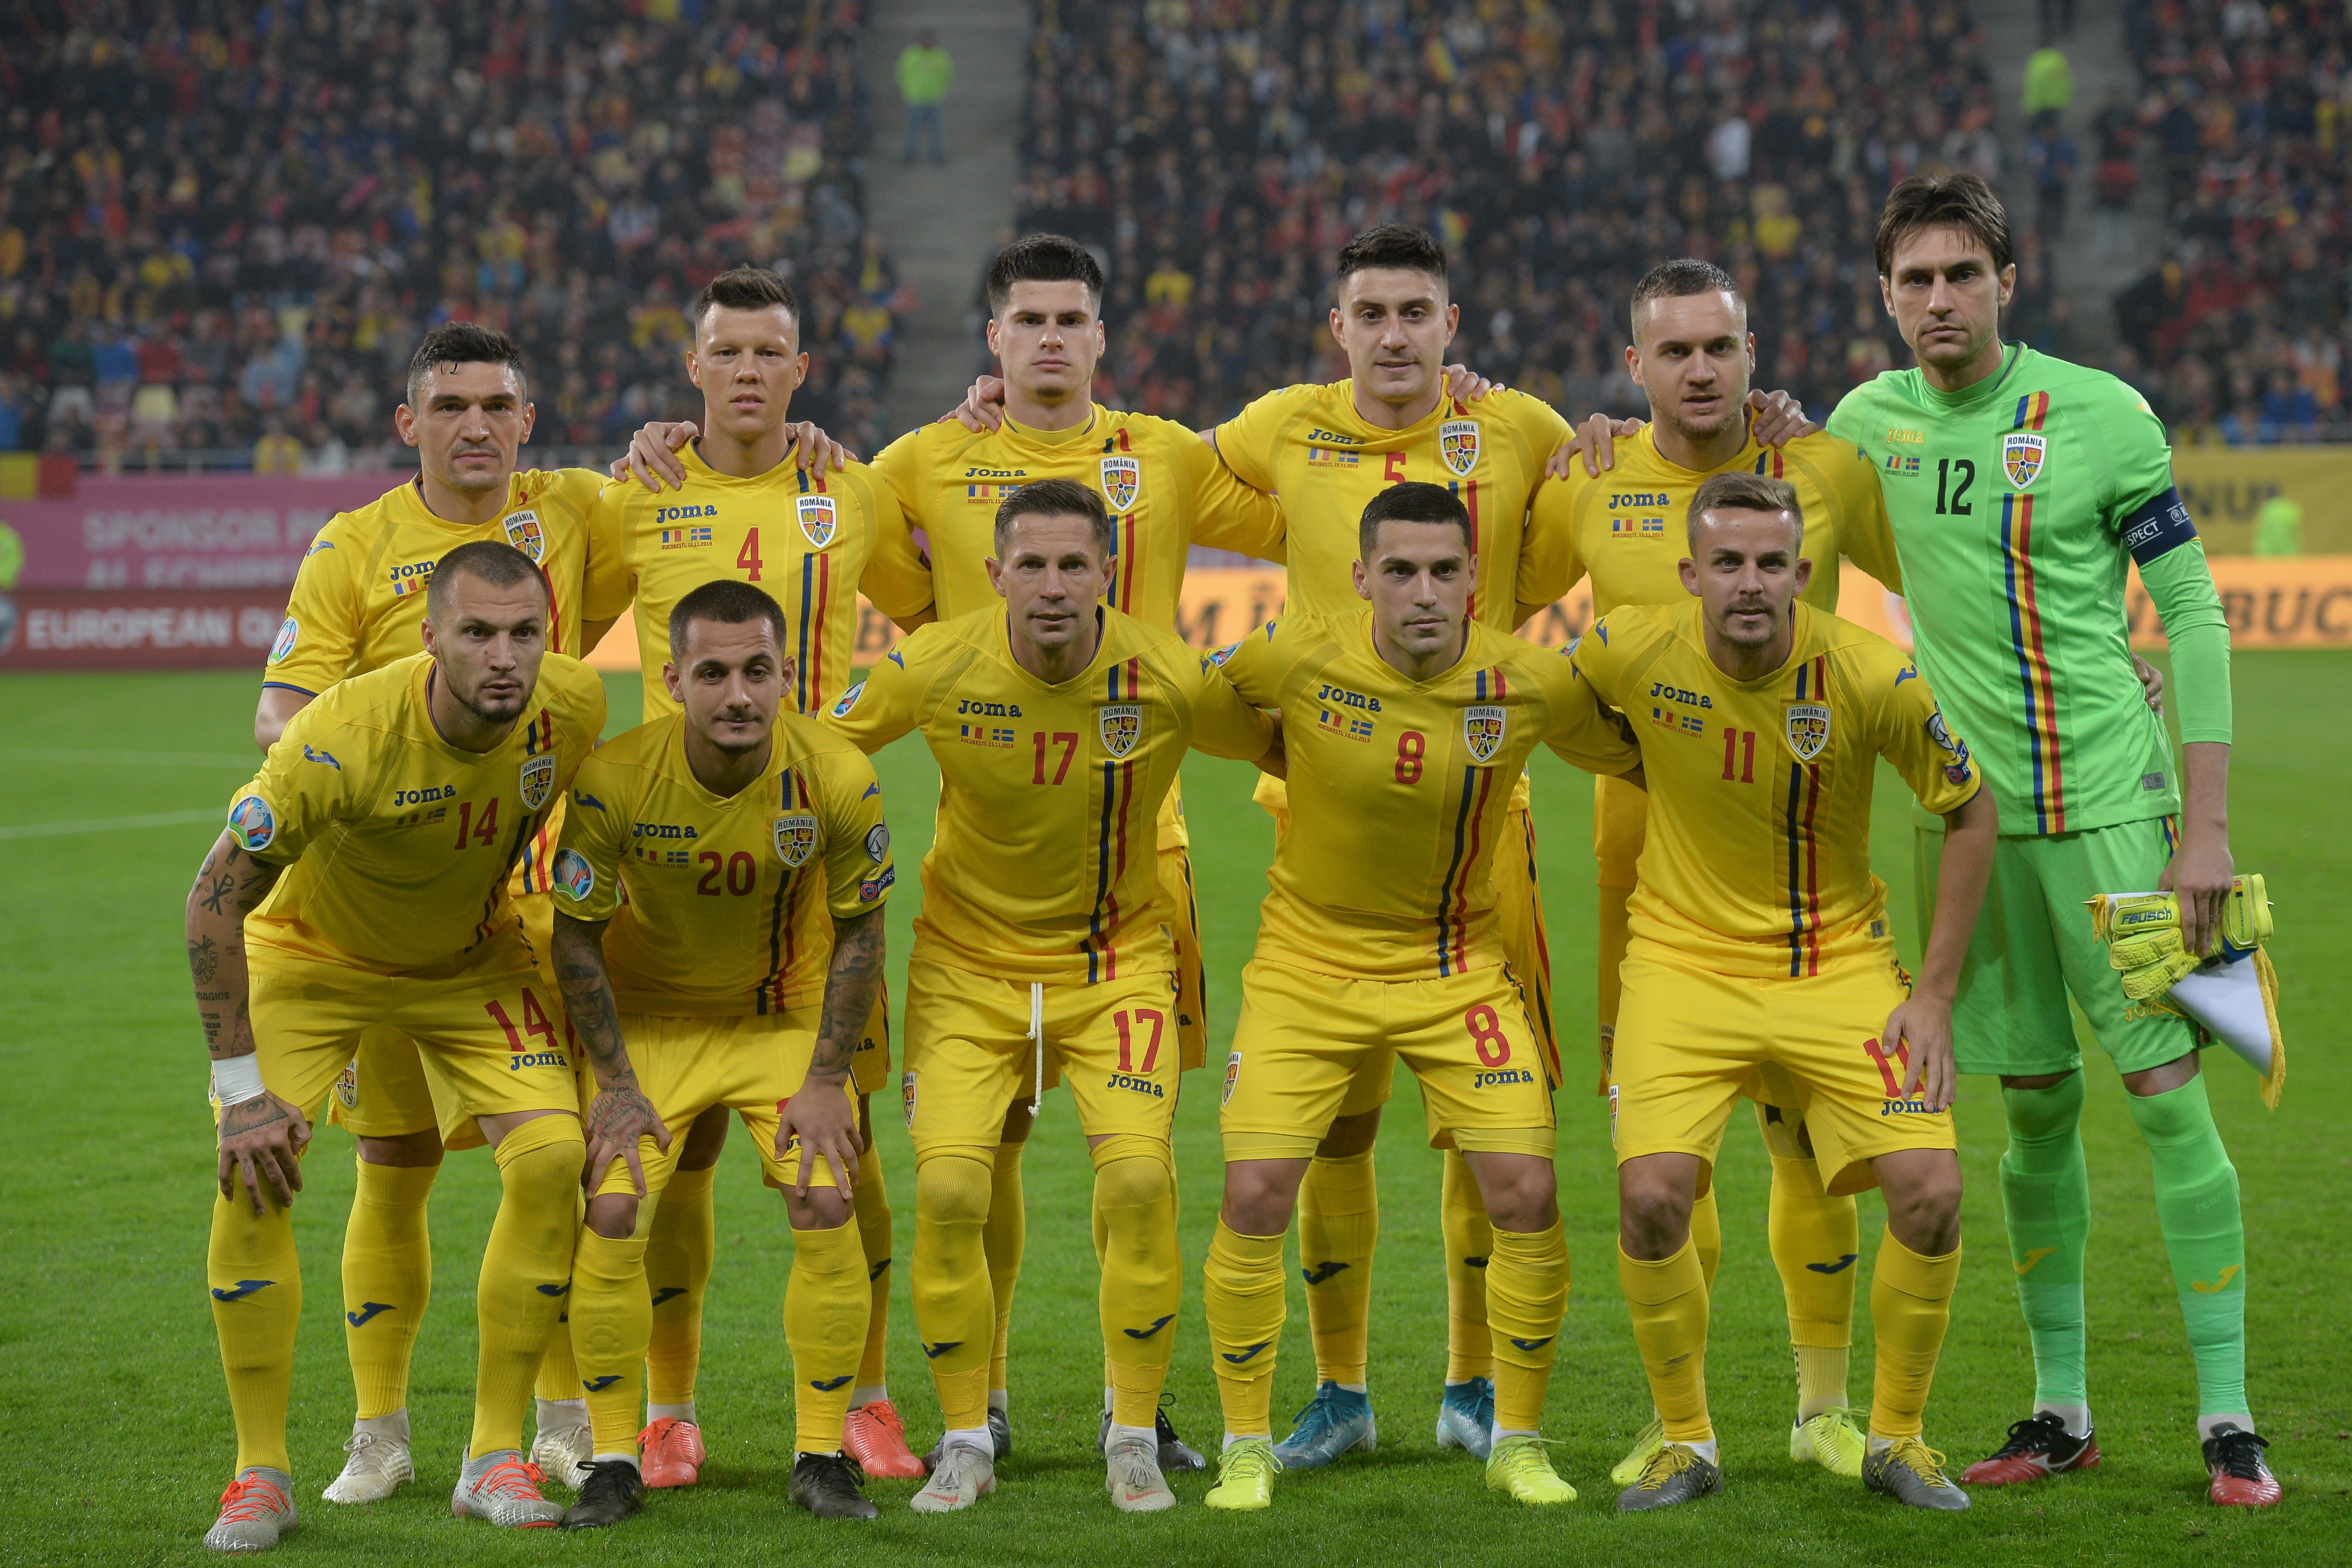 Tragerea la sorţi de la Bucureşti. România va juca la Campionatul European de fotbal împotriva Olandei, Austriei şi Ucrainei, dacă va învinge Islanda în meciul de baraj. Dacă va trece de Islanda şi Bulgaria sau Ungaria